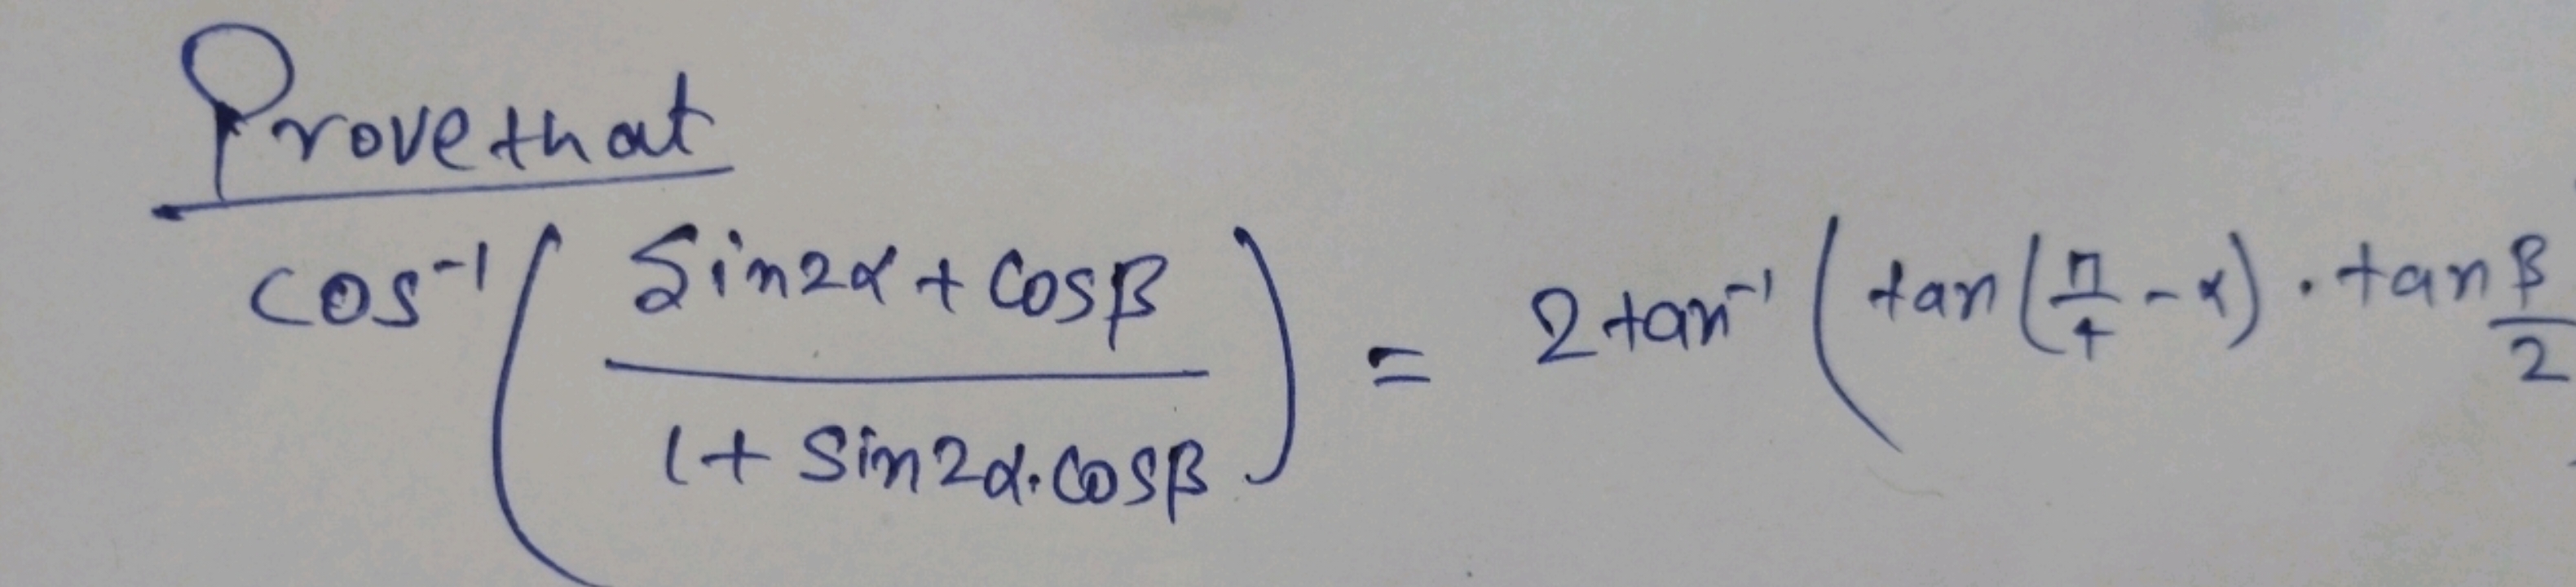 Provethat
cos−1(1+sin2α⋅cosβsin2α+cosβ​)=2tan−1(tan(4π​−α)⋅tan2β​
